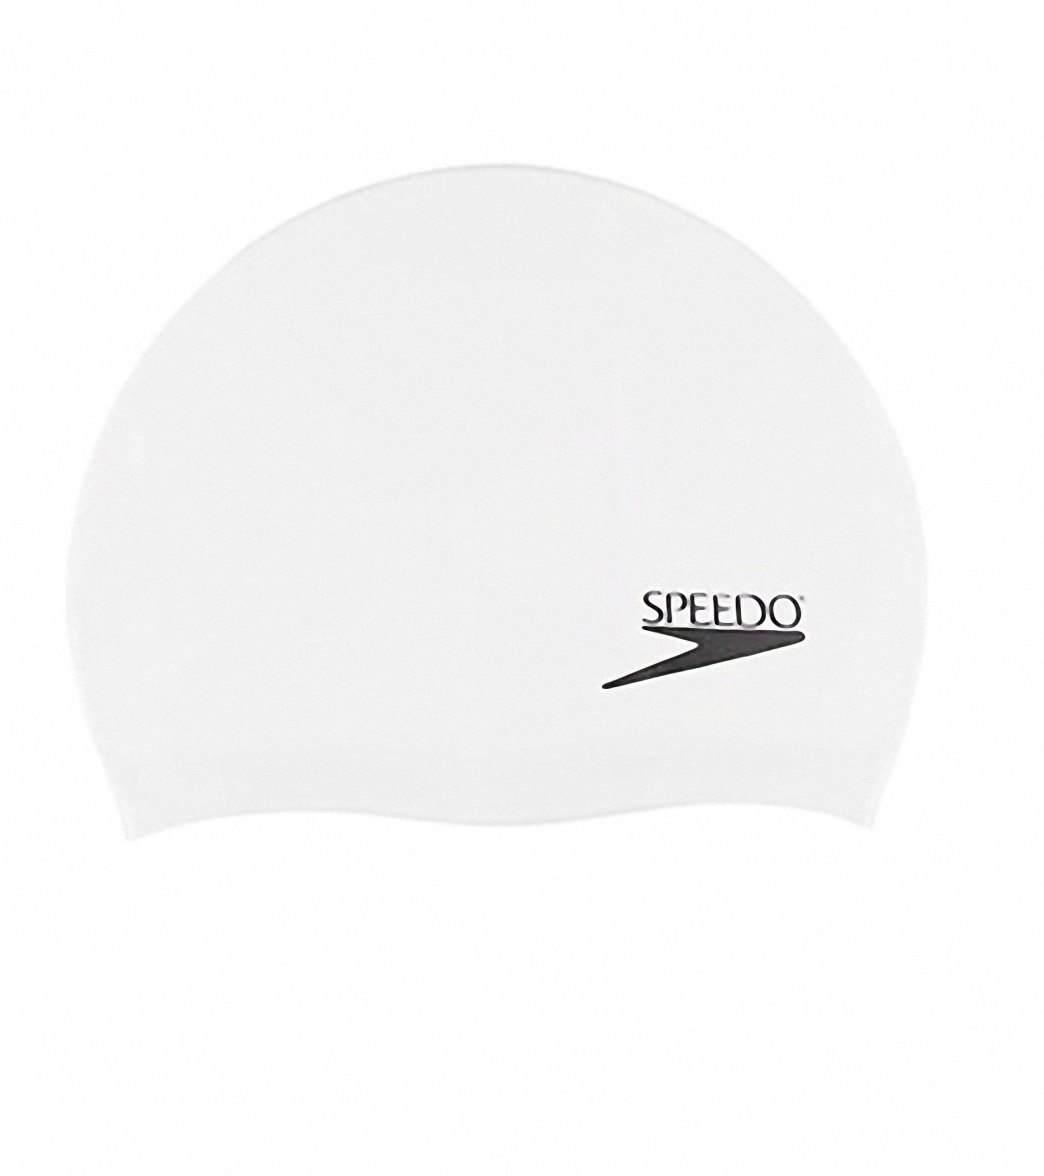 Speedo White Elastomeric Silicone Swim Cap